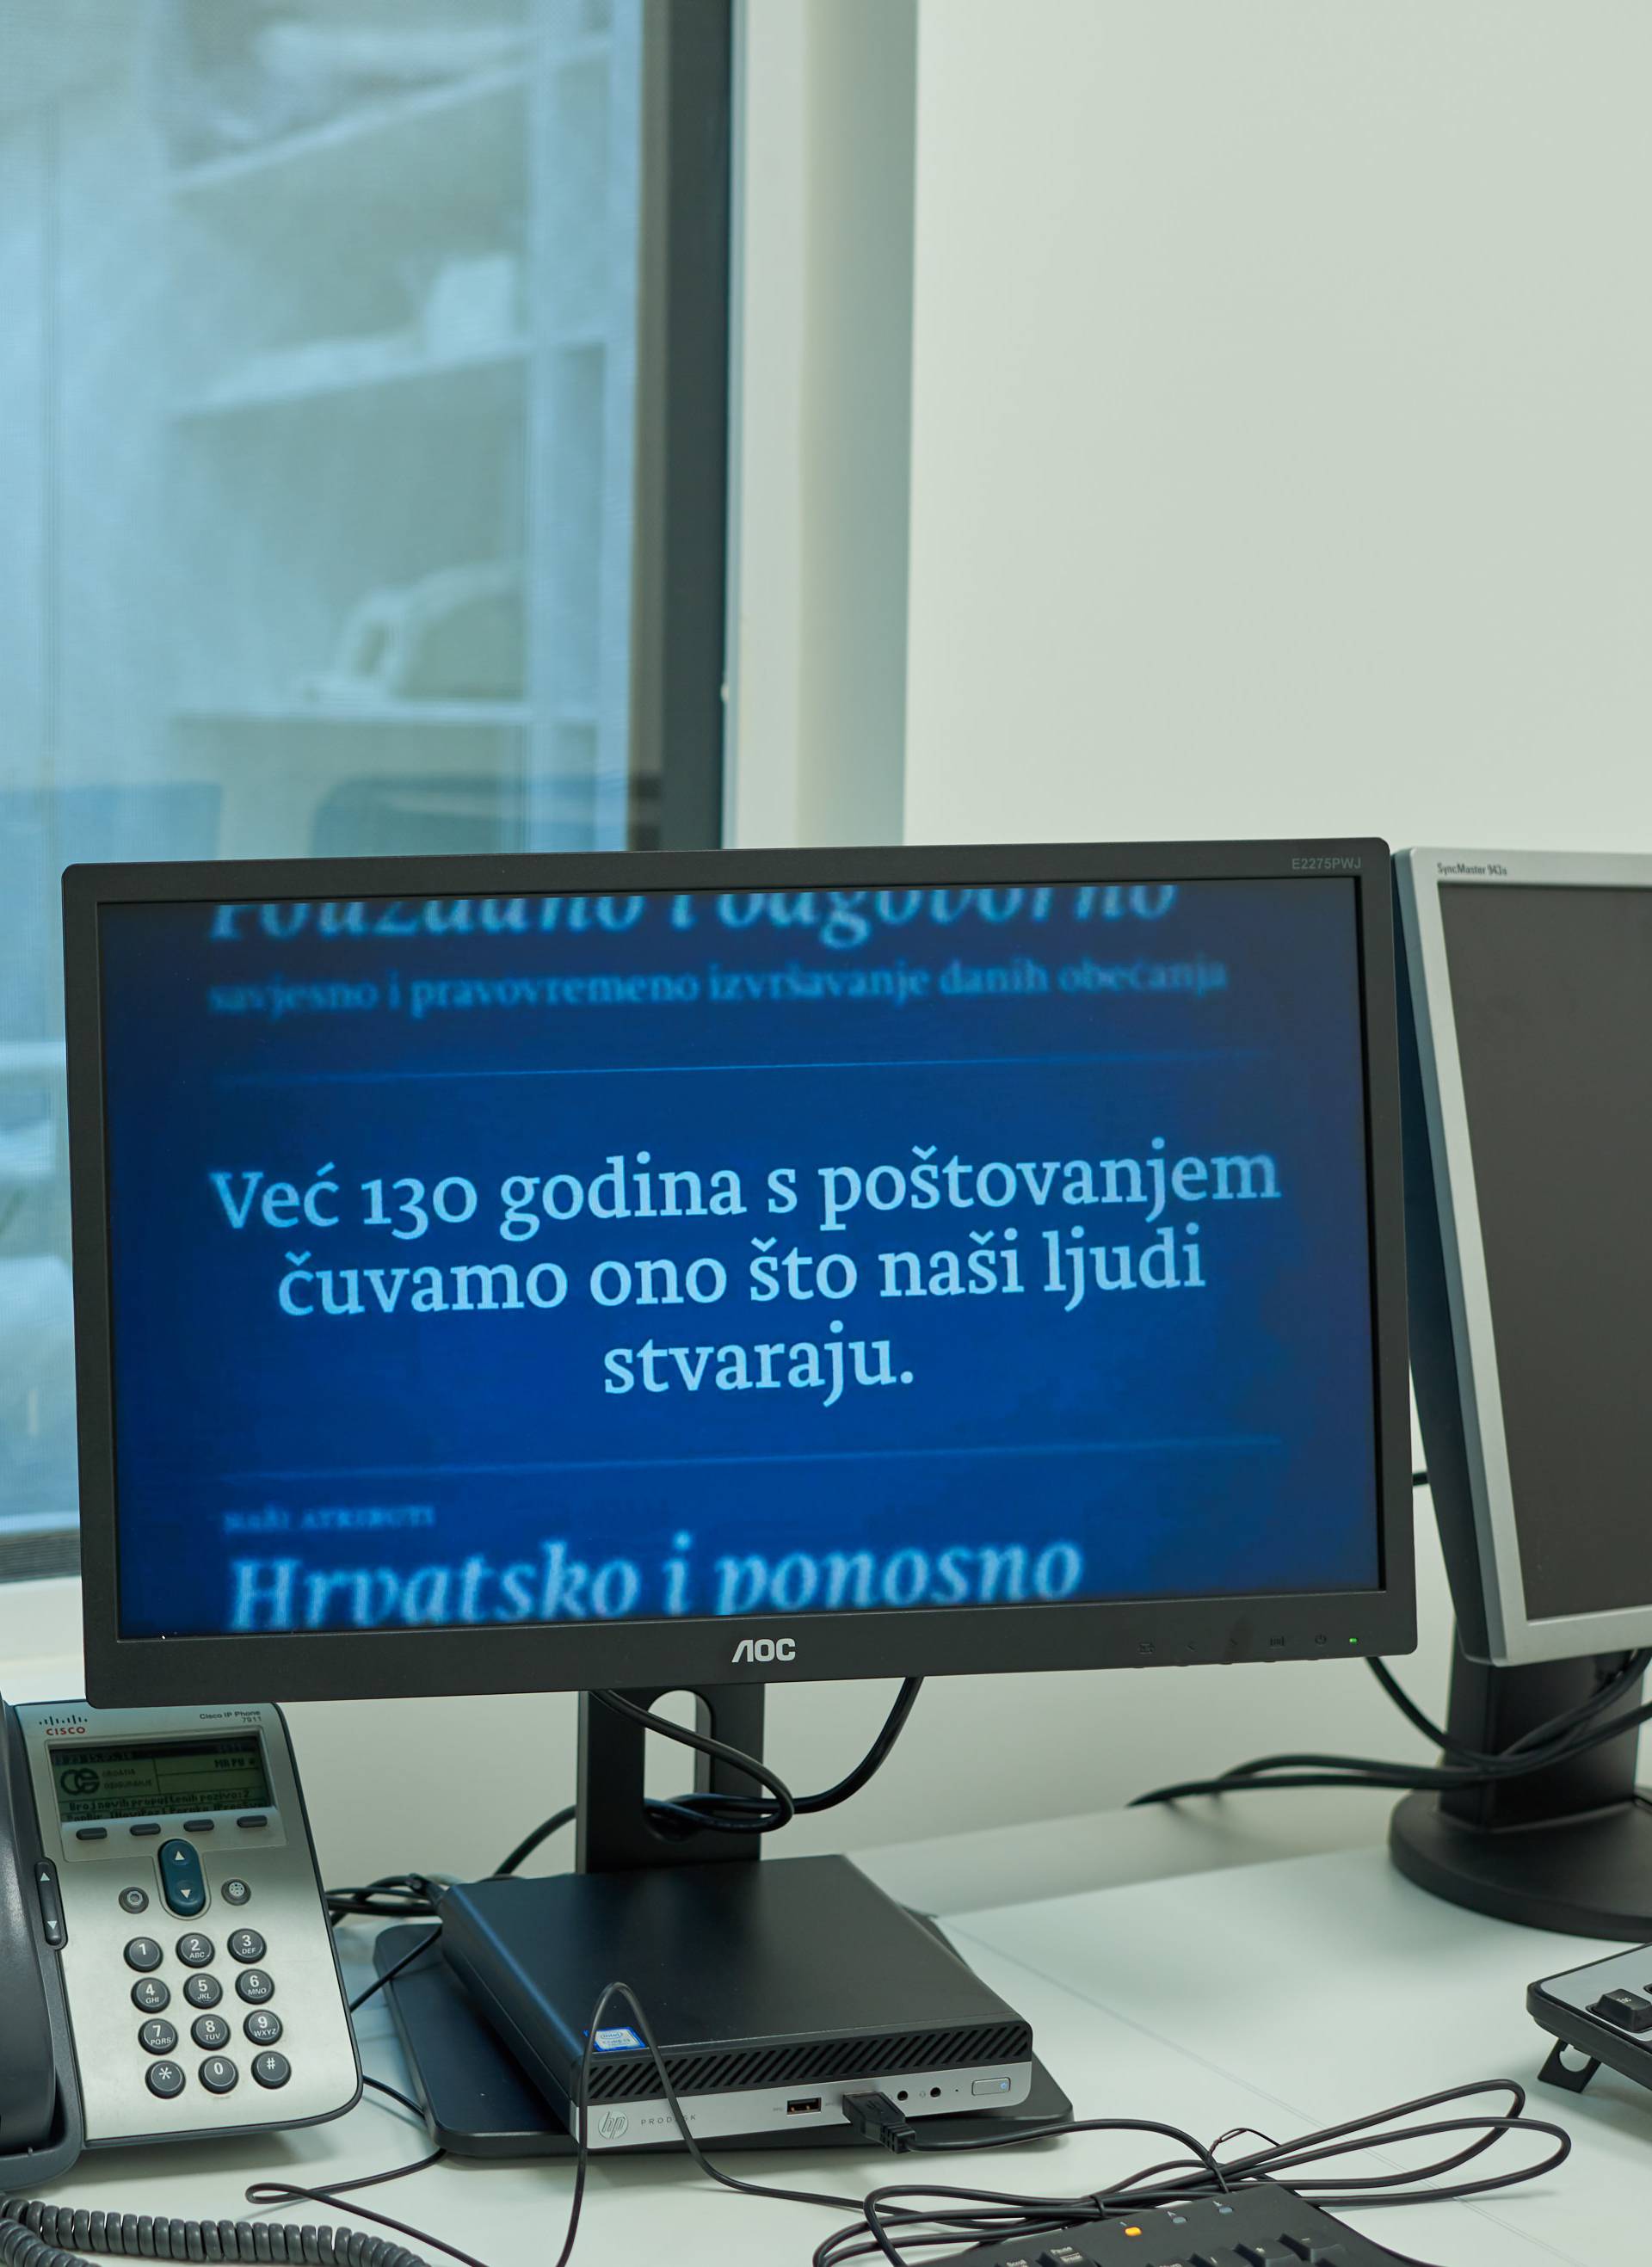 Croatia osiguranje otvorila je novu polikliniku  u centru Pule